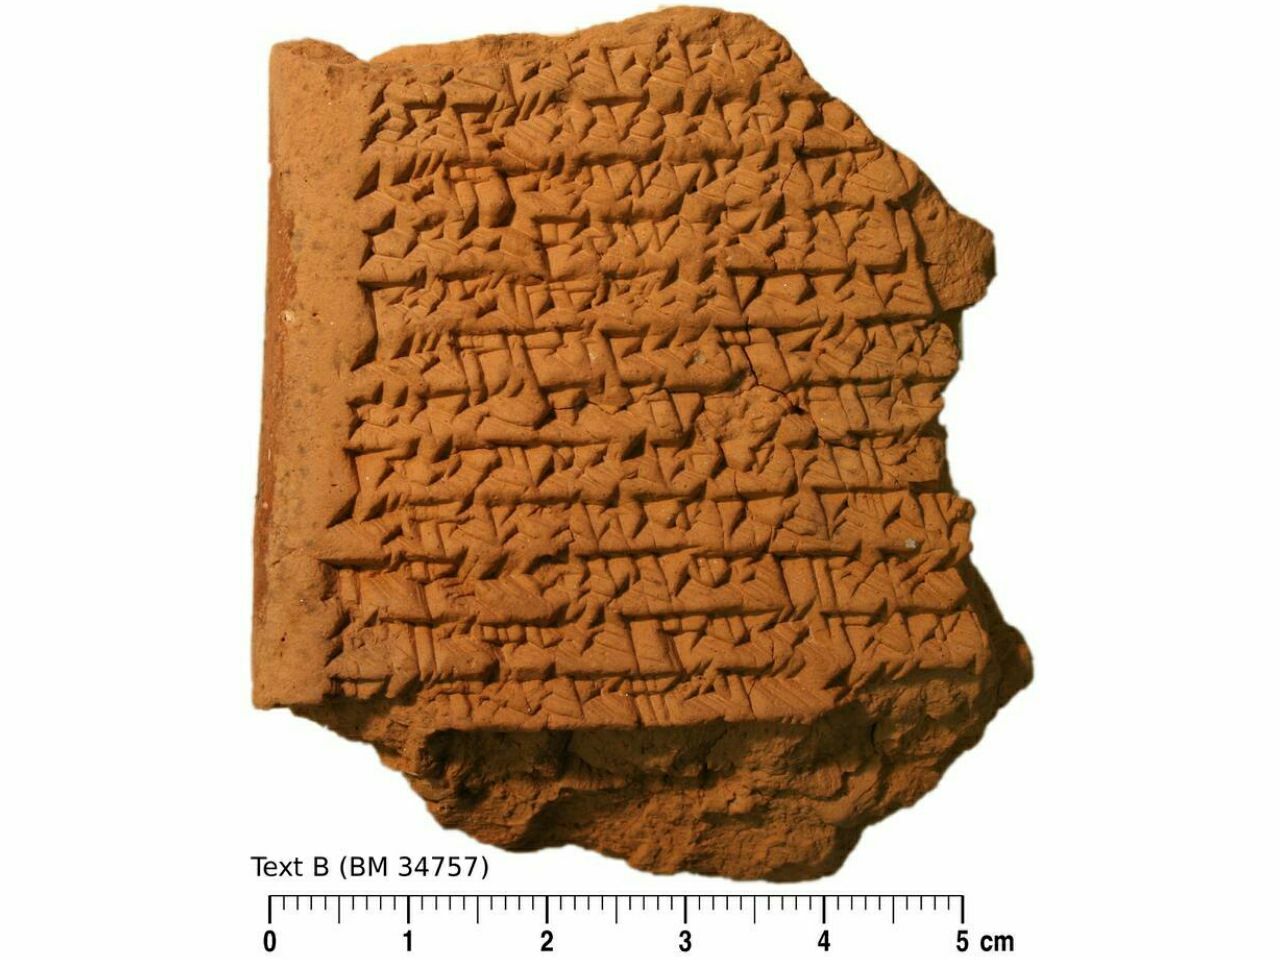 Eski Babil tabletleri